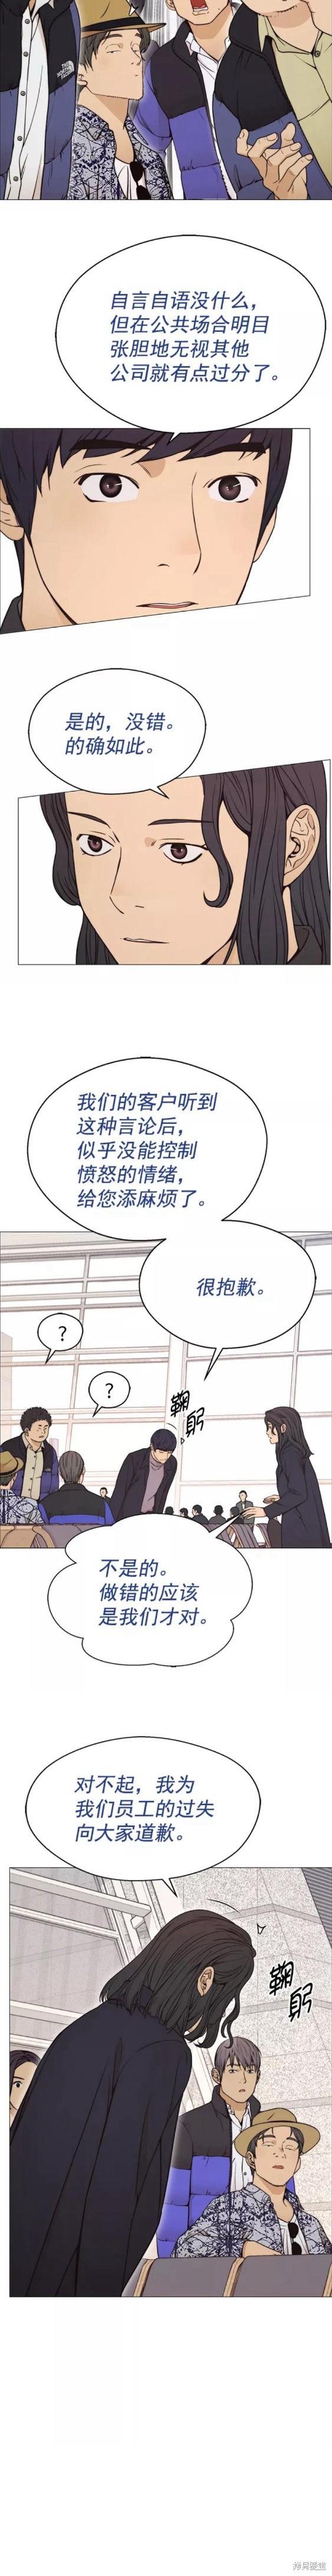 男子汉漫画,第114话3图